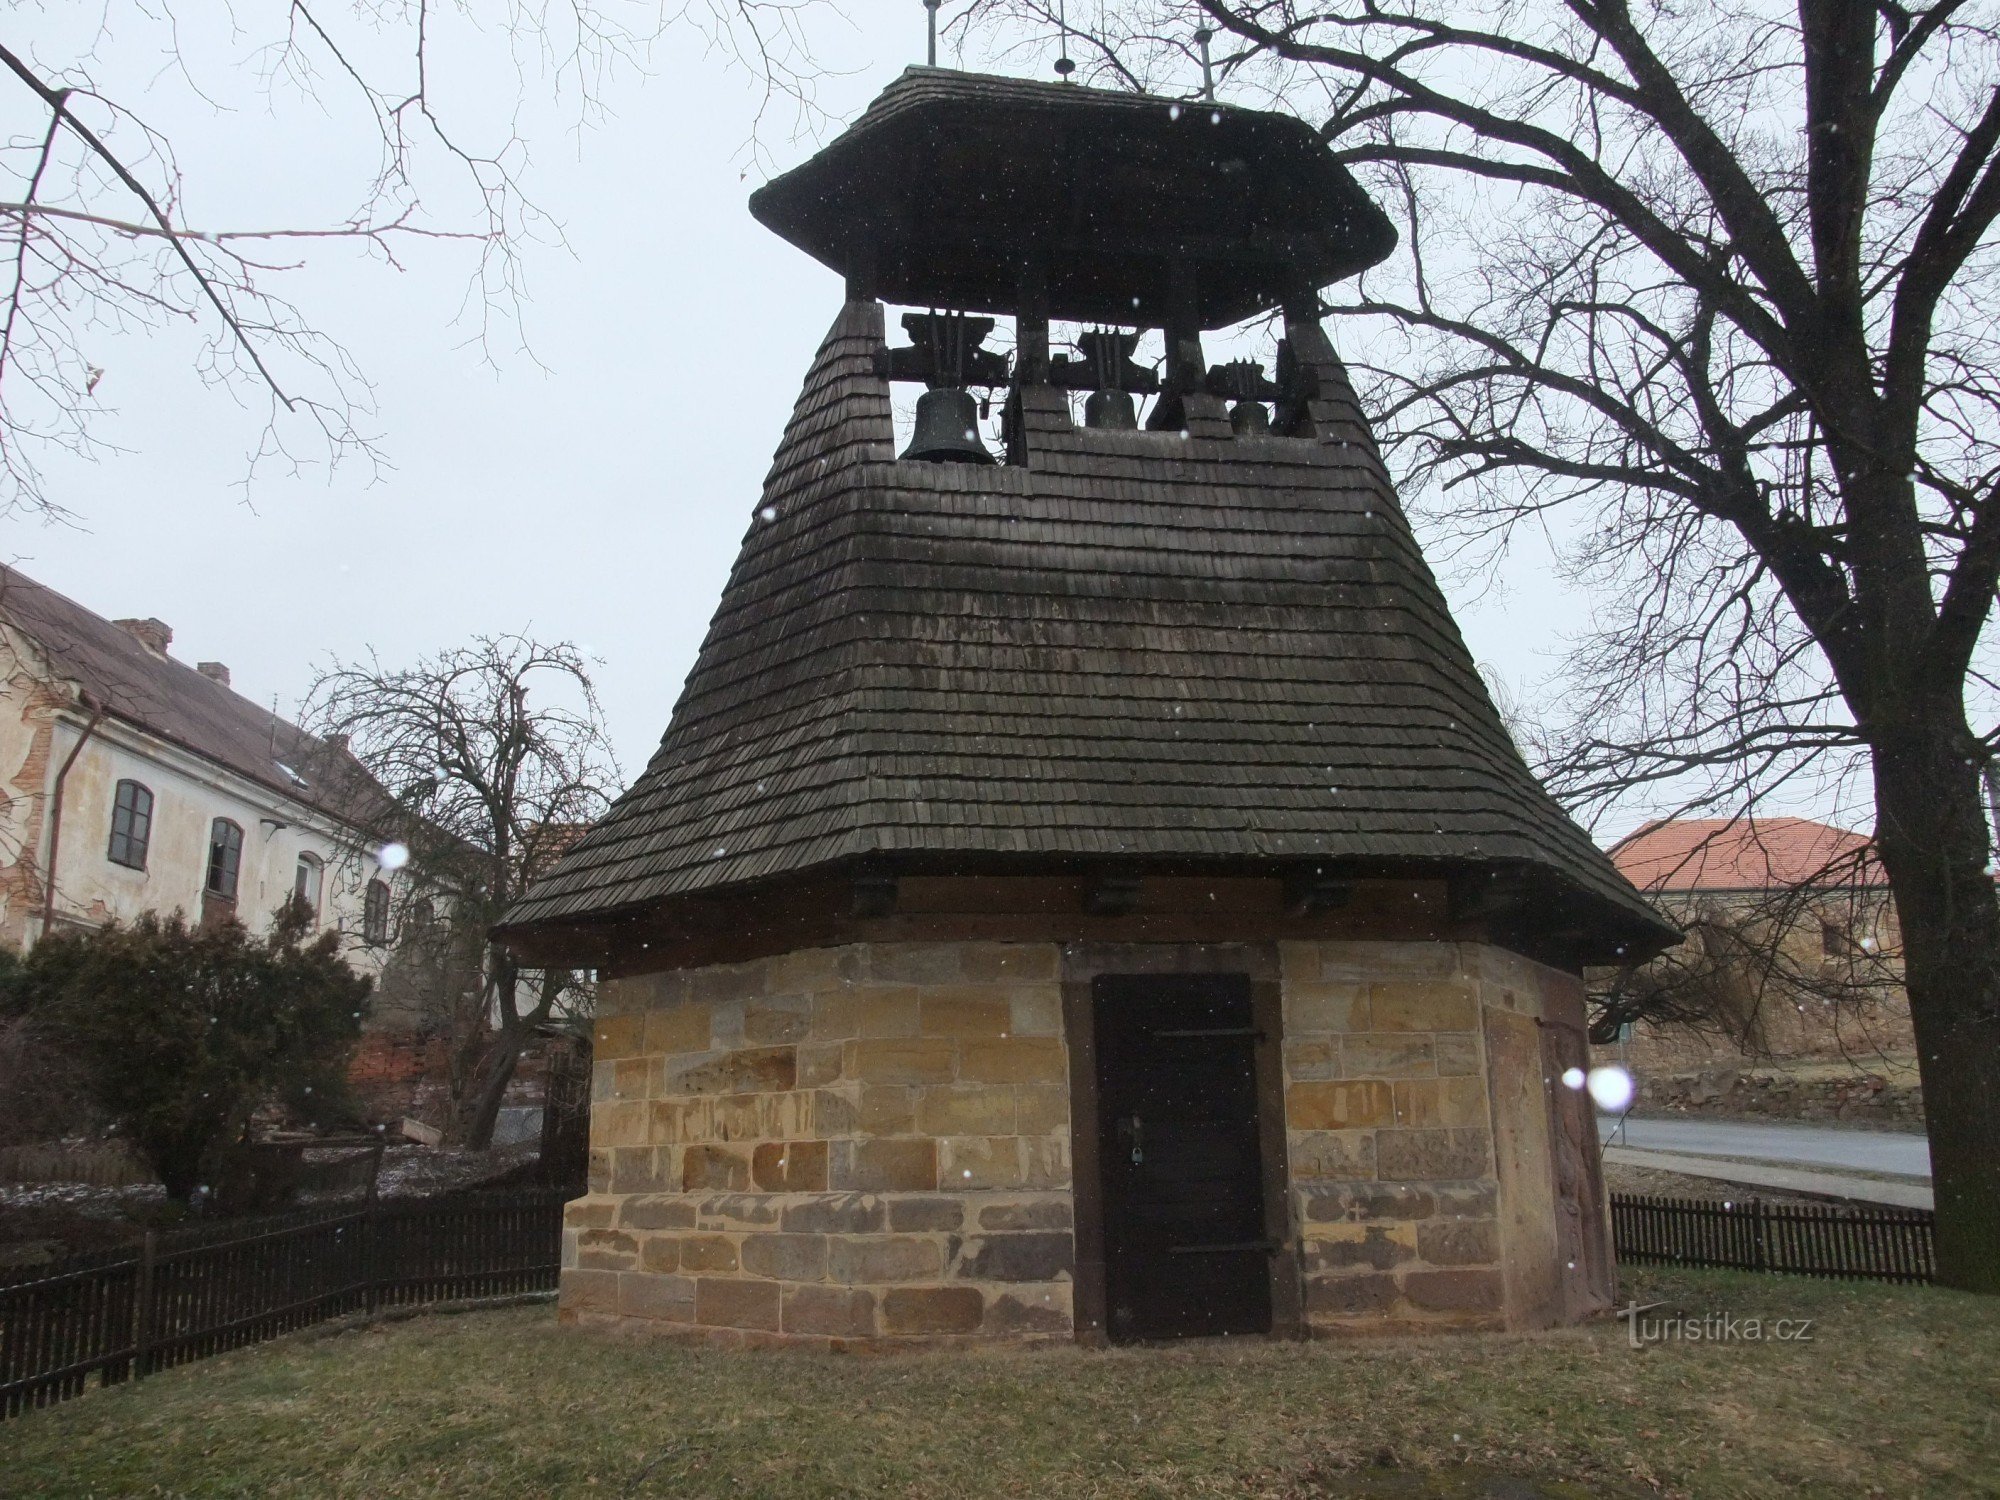 Tháp chuông lịch sử ở Neprobylice